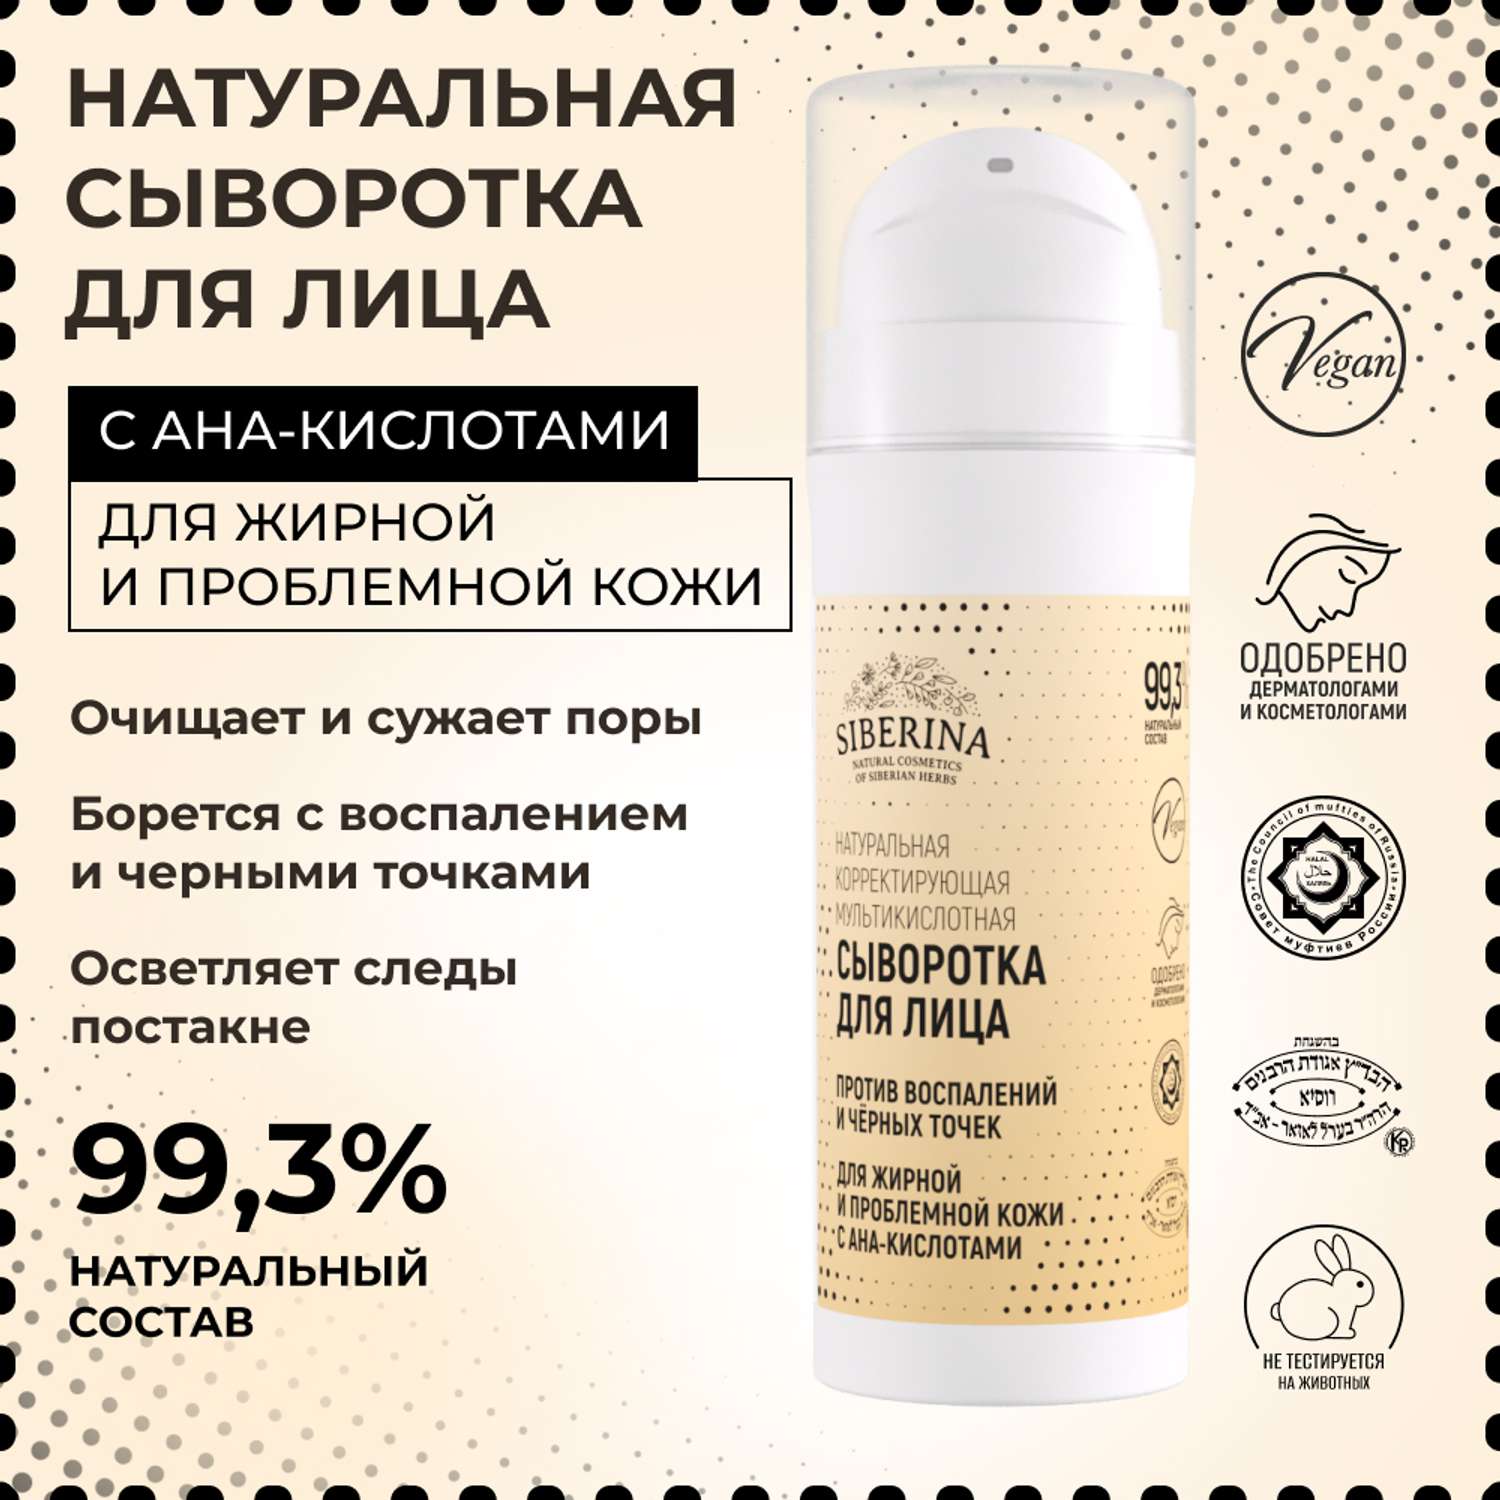 Сыворотка для лица Siberina натуральная для жирной и проблемной кожи c AHA-кислотами 30 мл - фото 2